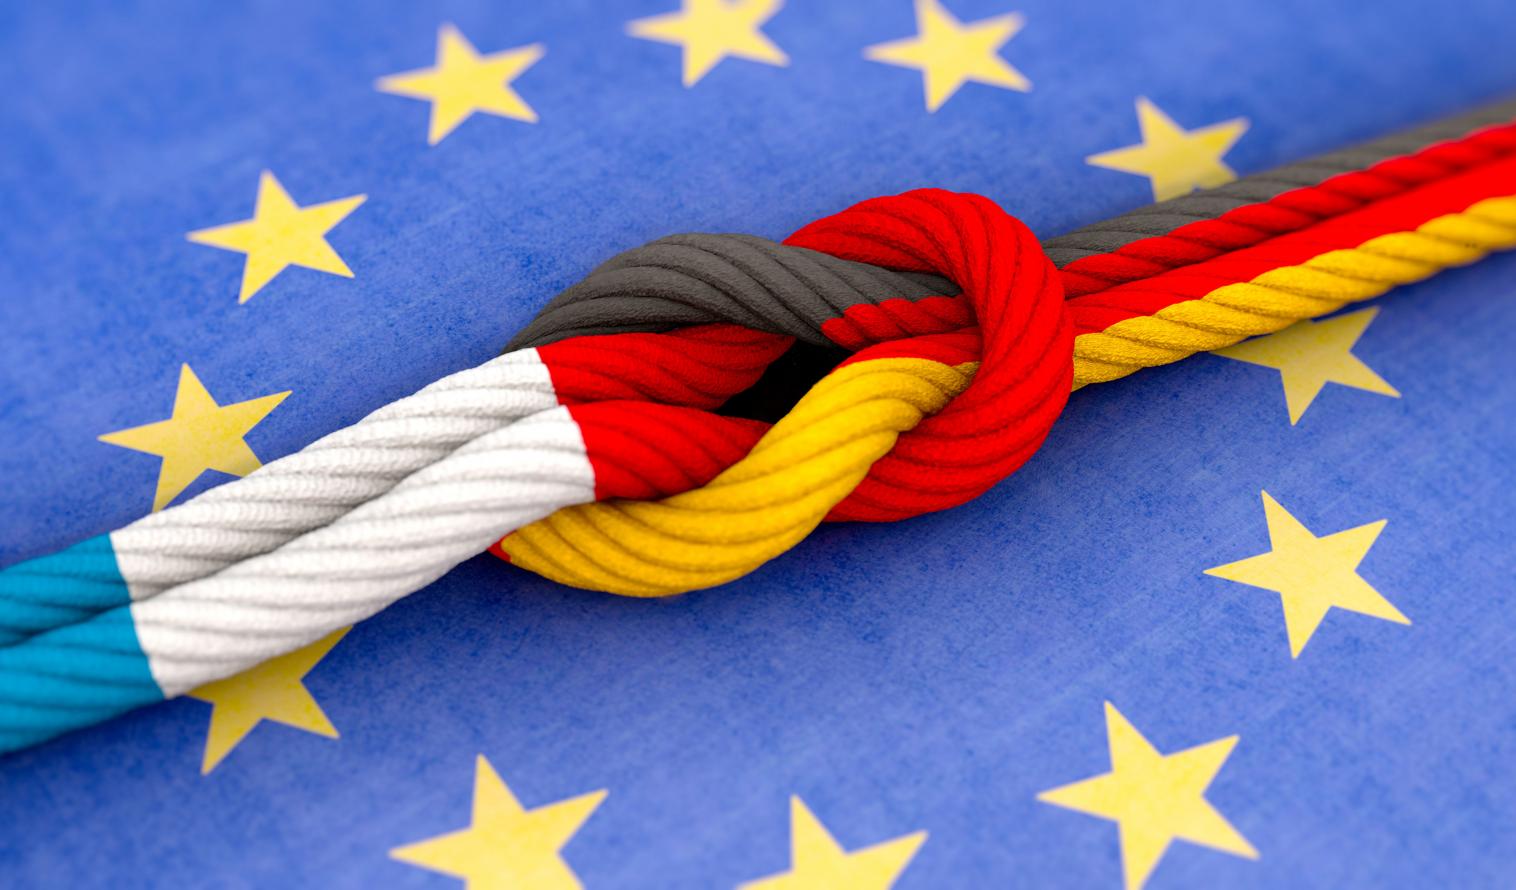 Knoten mit Farben der deutschen und französischen Flagge, dahinter ein Kreis aus zwölf goldenen Sternen auf blauem Hintergrund